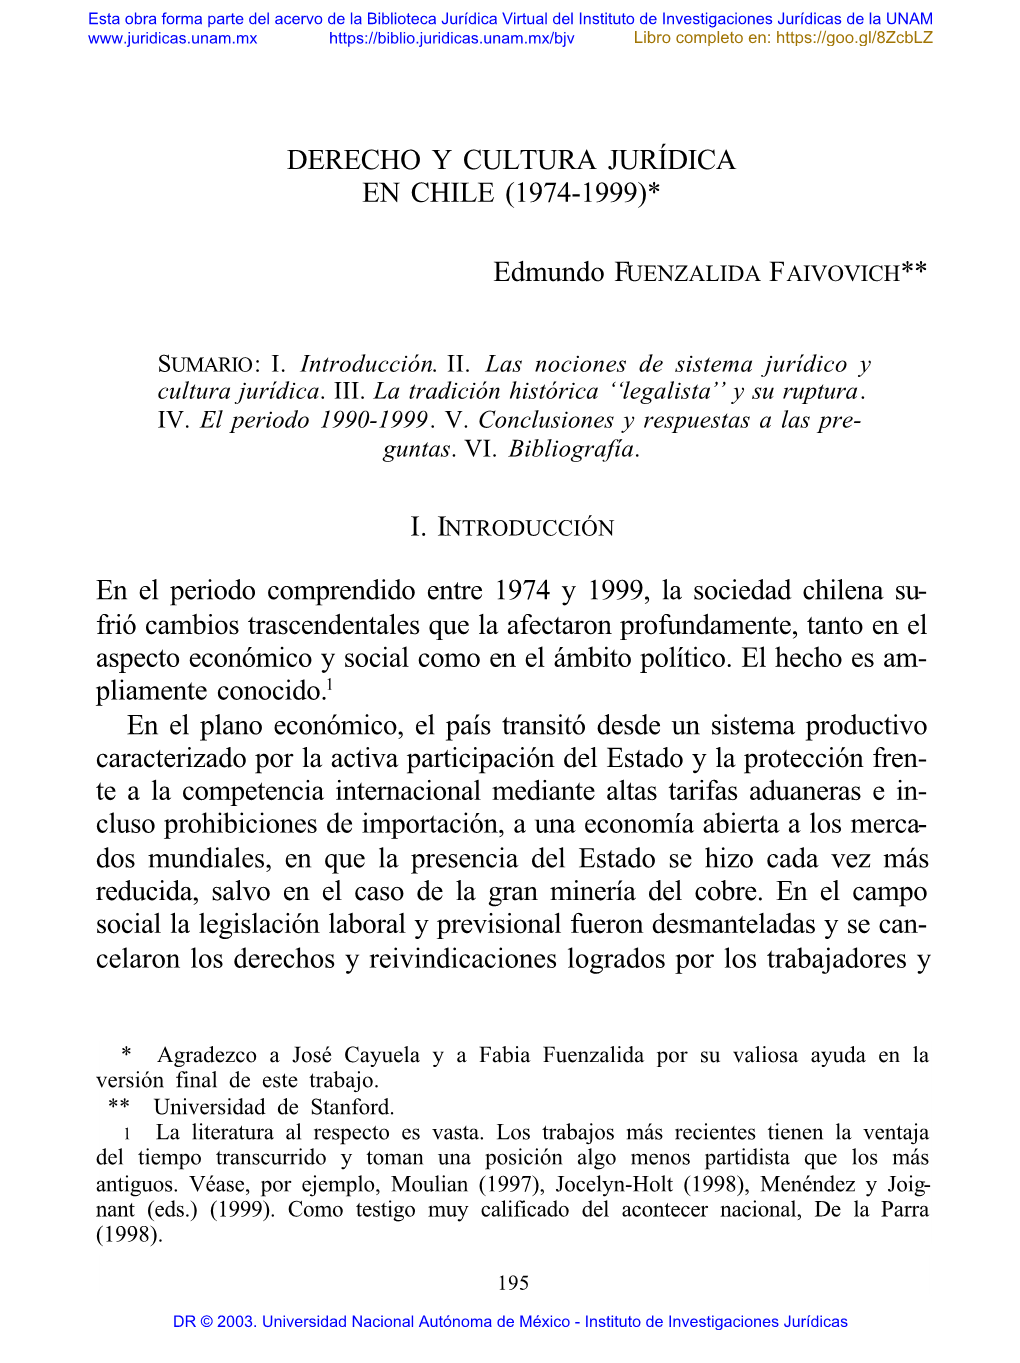 Derecho Y Cultura Jurídica En Chile (1974-1999)*